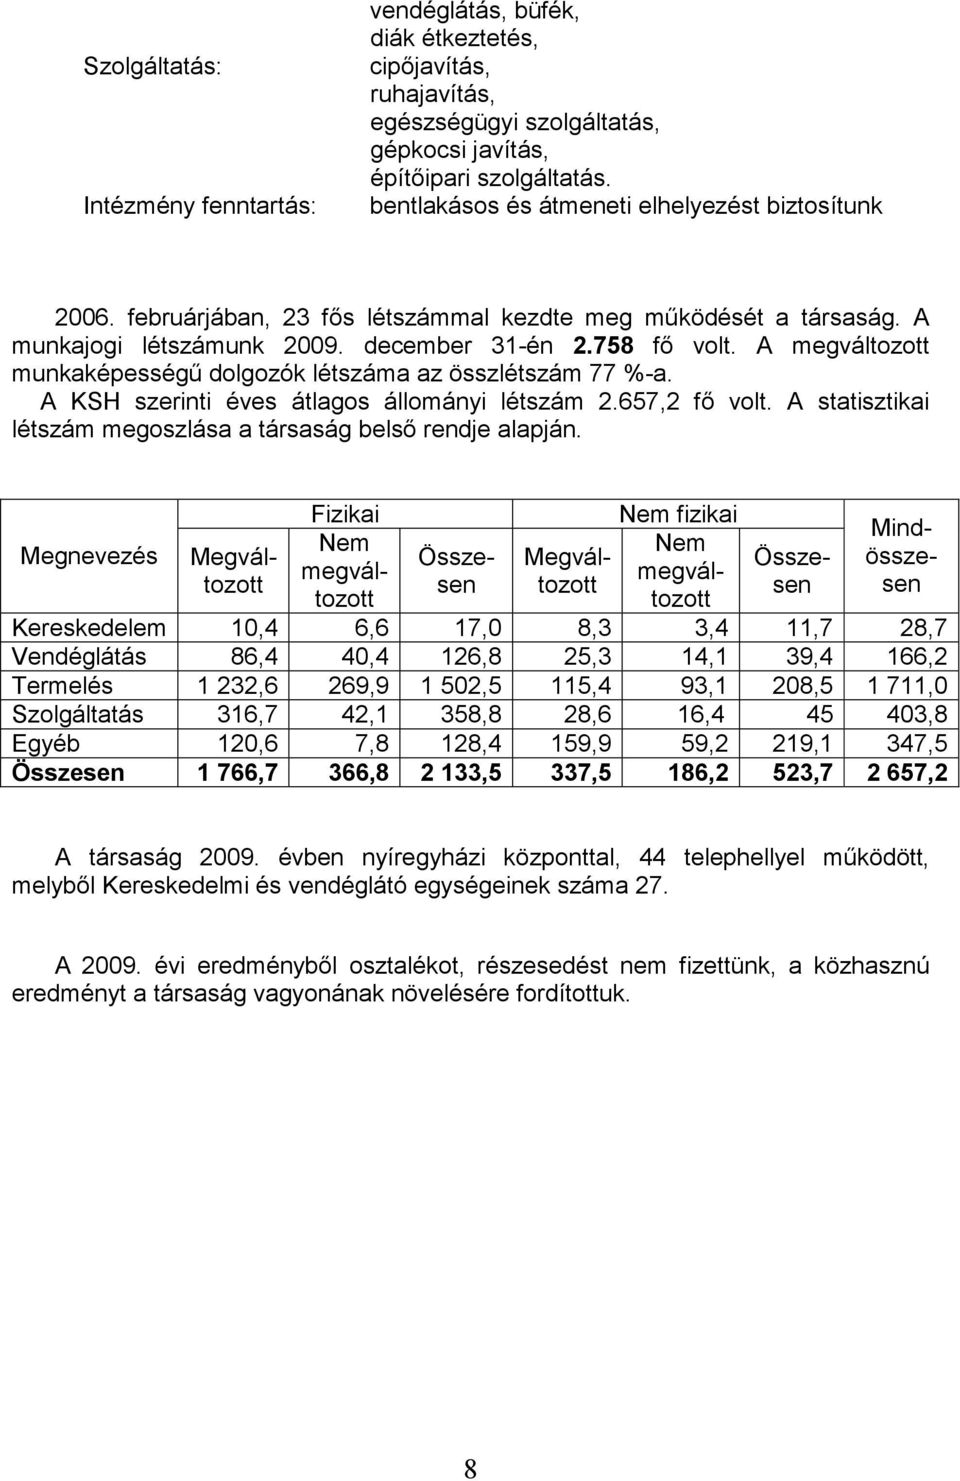 A megváltozott munkaképességő dolgozók létszáma az összlétszám 77 %-a. A KSH szerinti éves átlagos állományi létszám 2.657,2 fı volt. A statisztikai létszám megoszlása a társaság belsı rendje alapján.